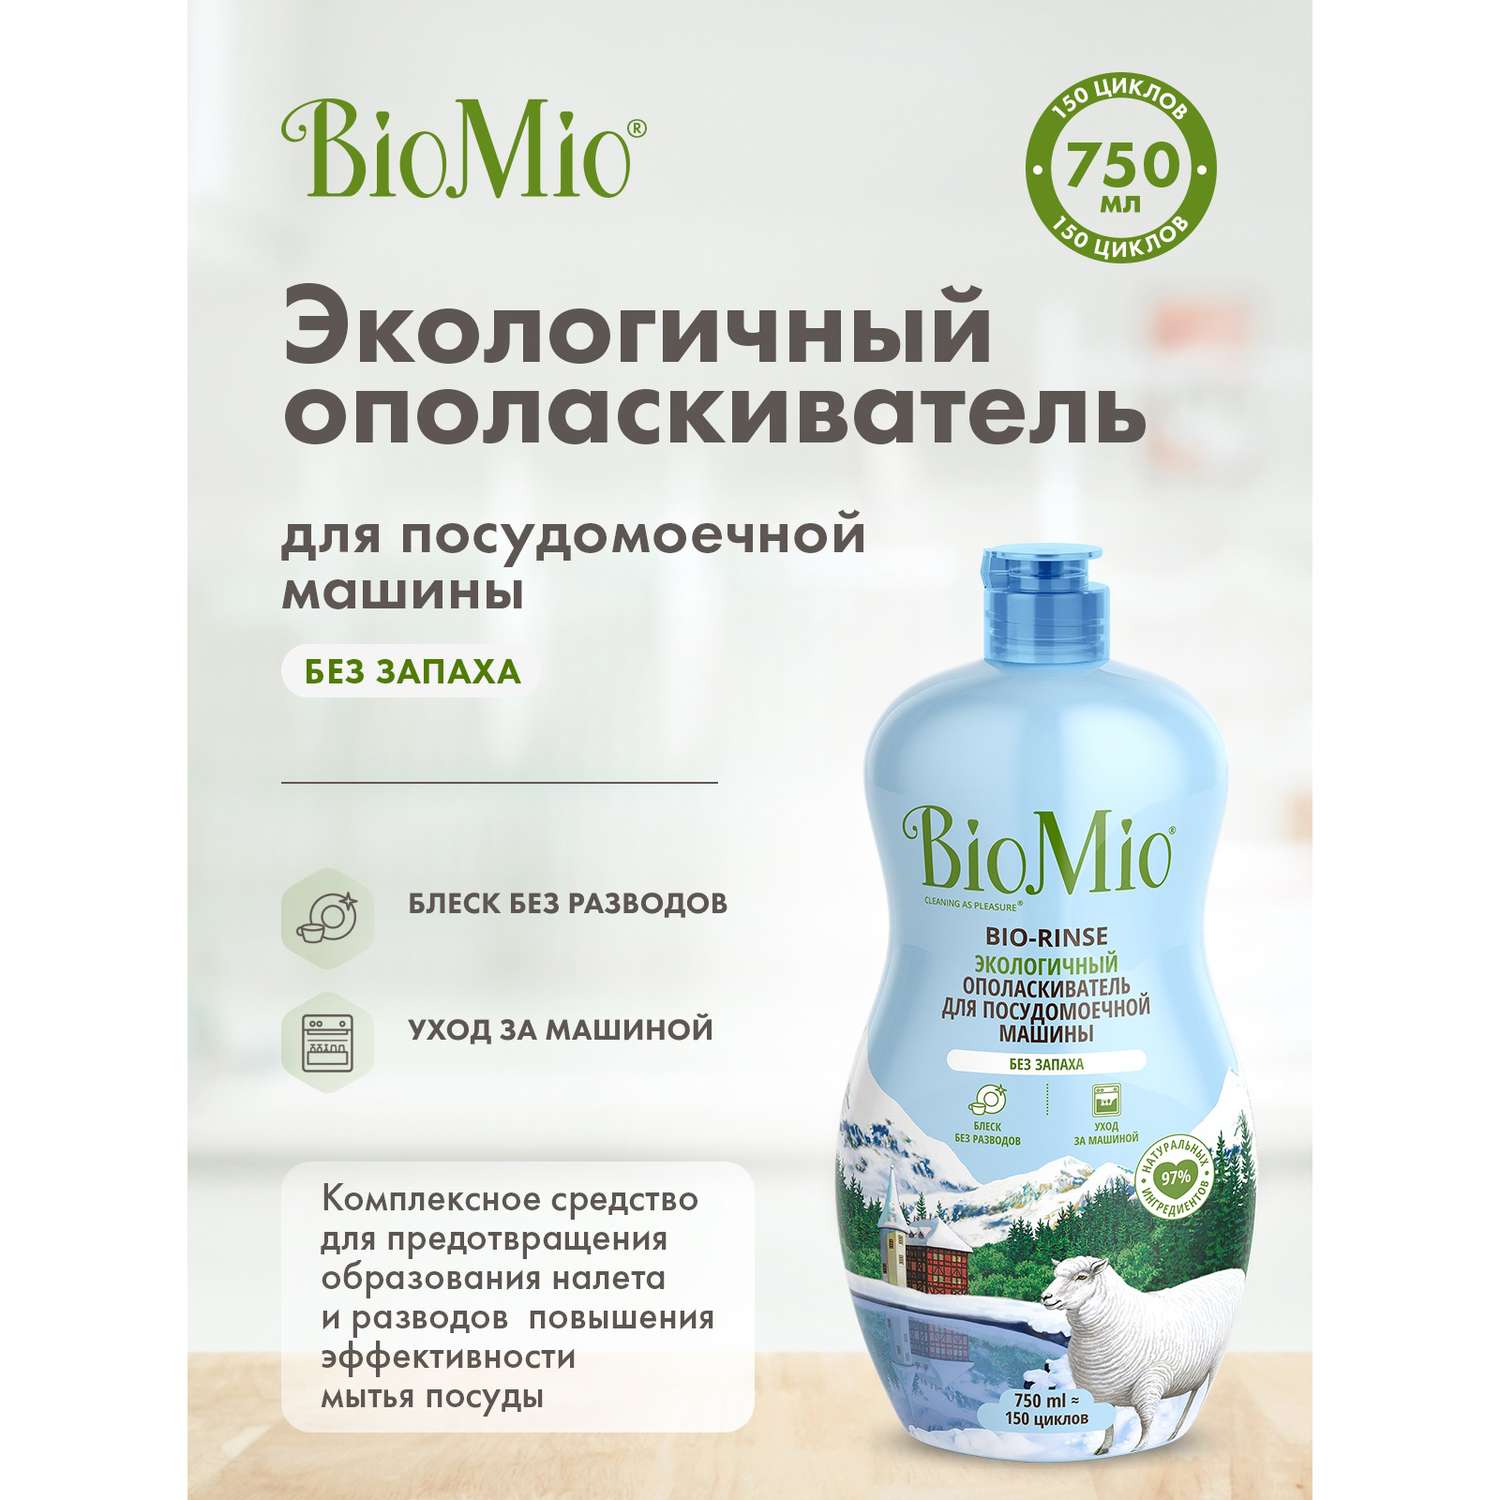 Ополаскиватель для посудомоечной машины BioMio Bio-Rinse 750мл - фото 2